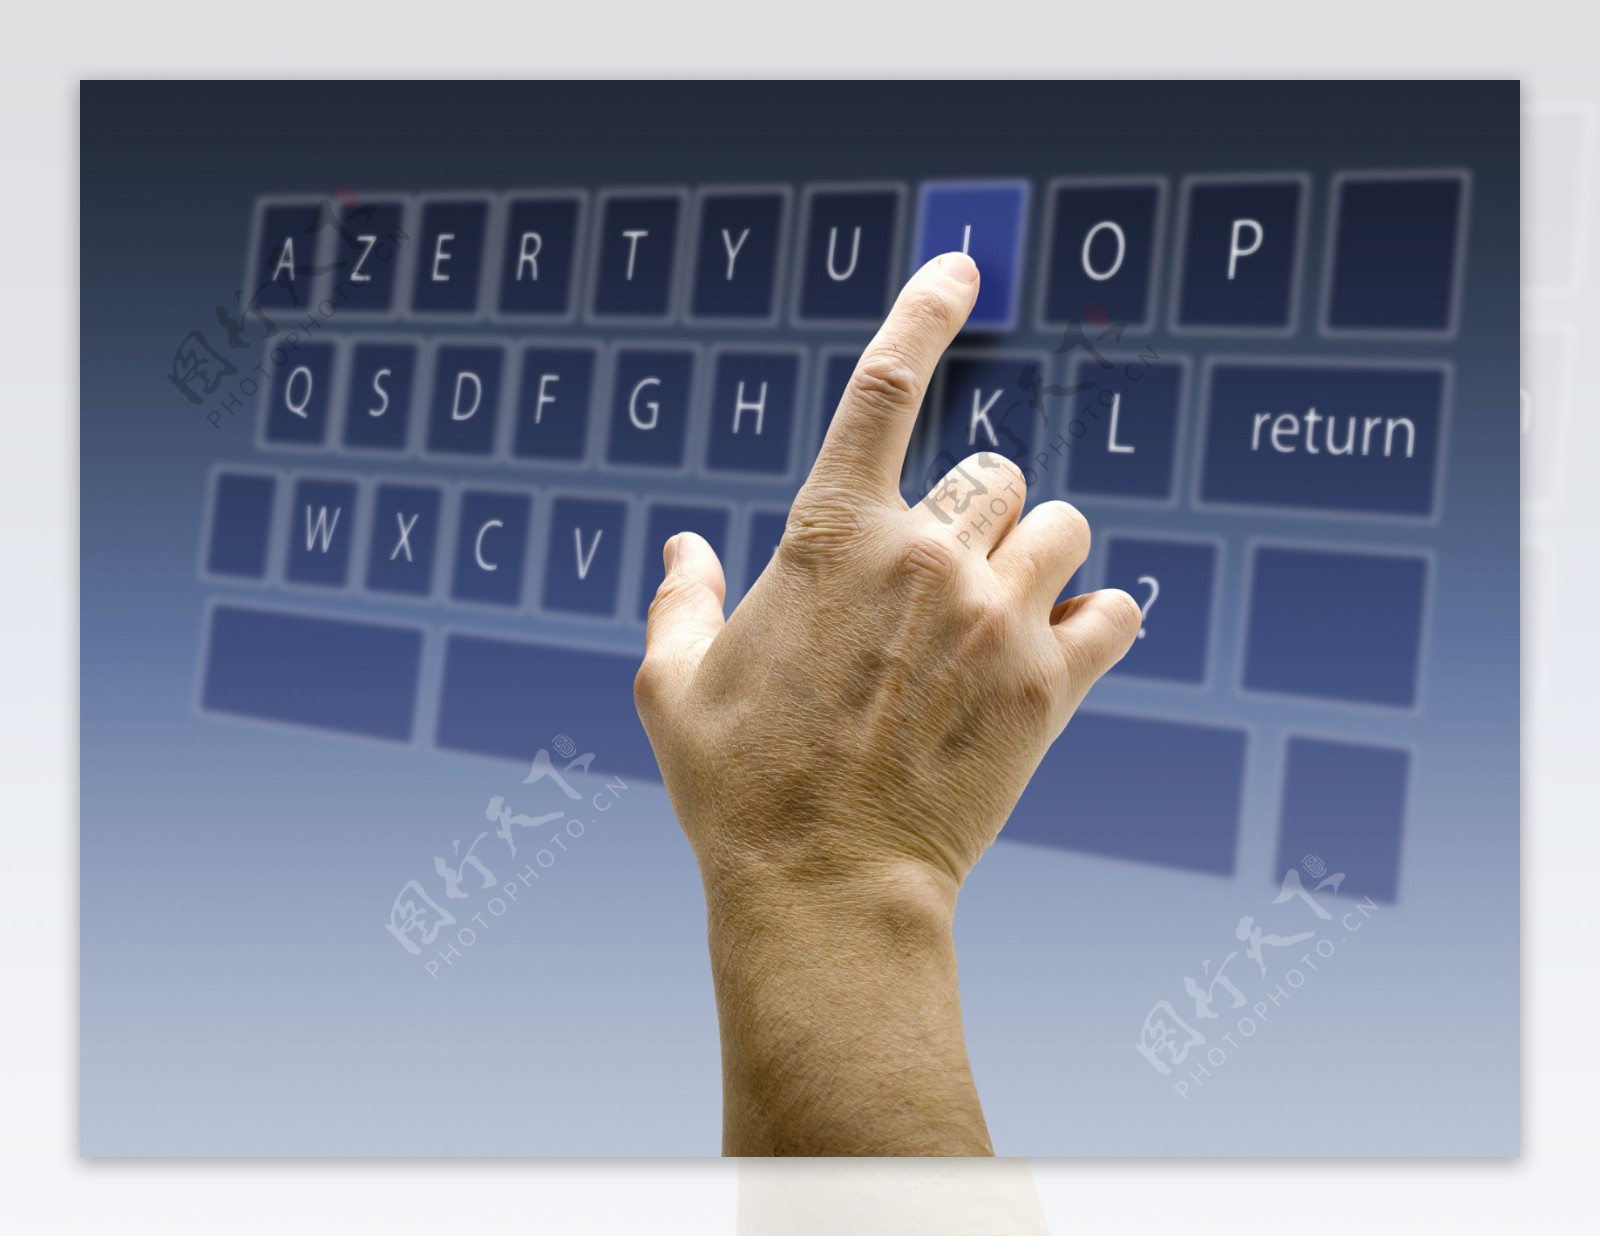 手指点击键盘手势图片